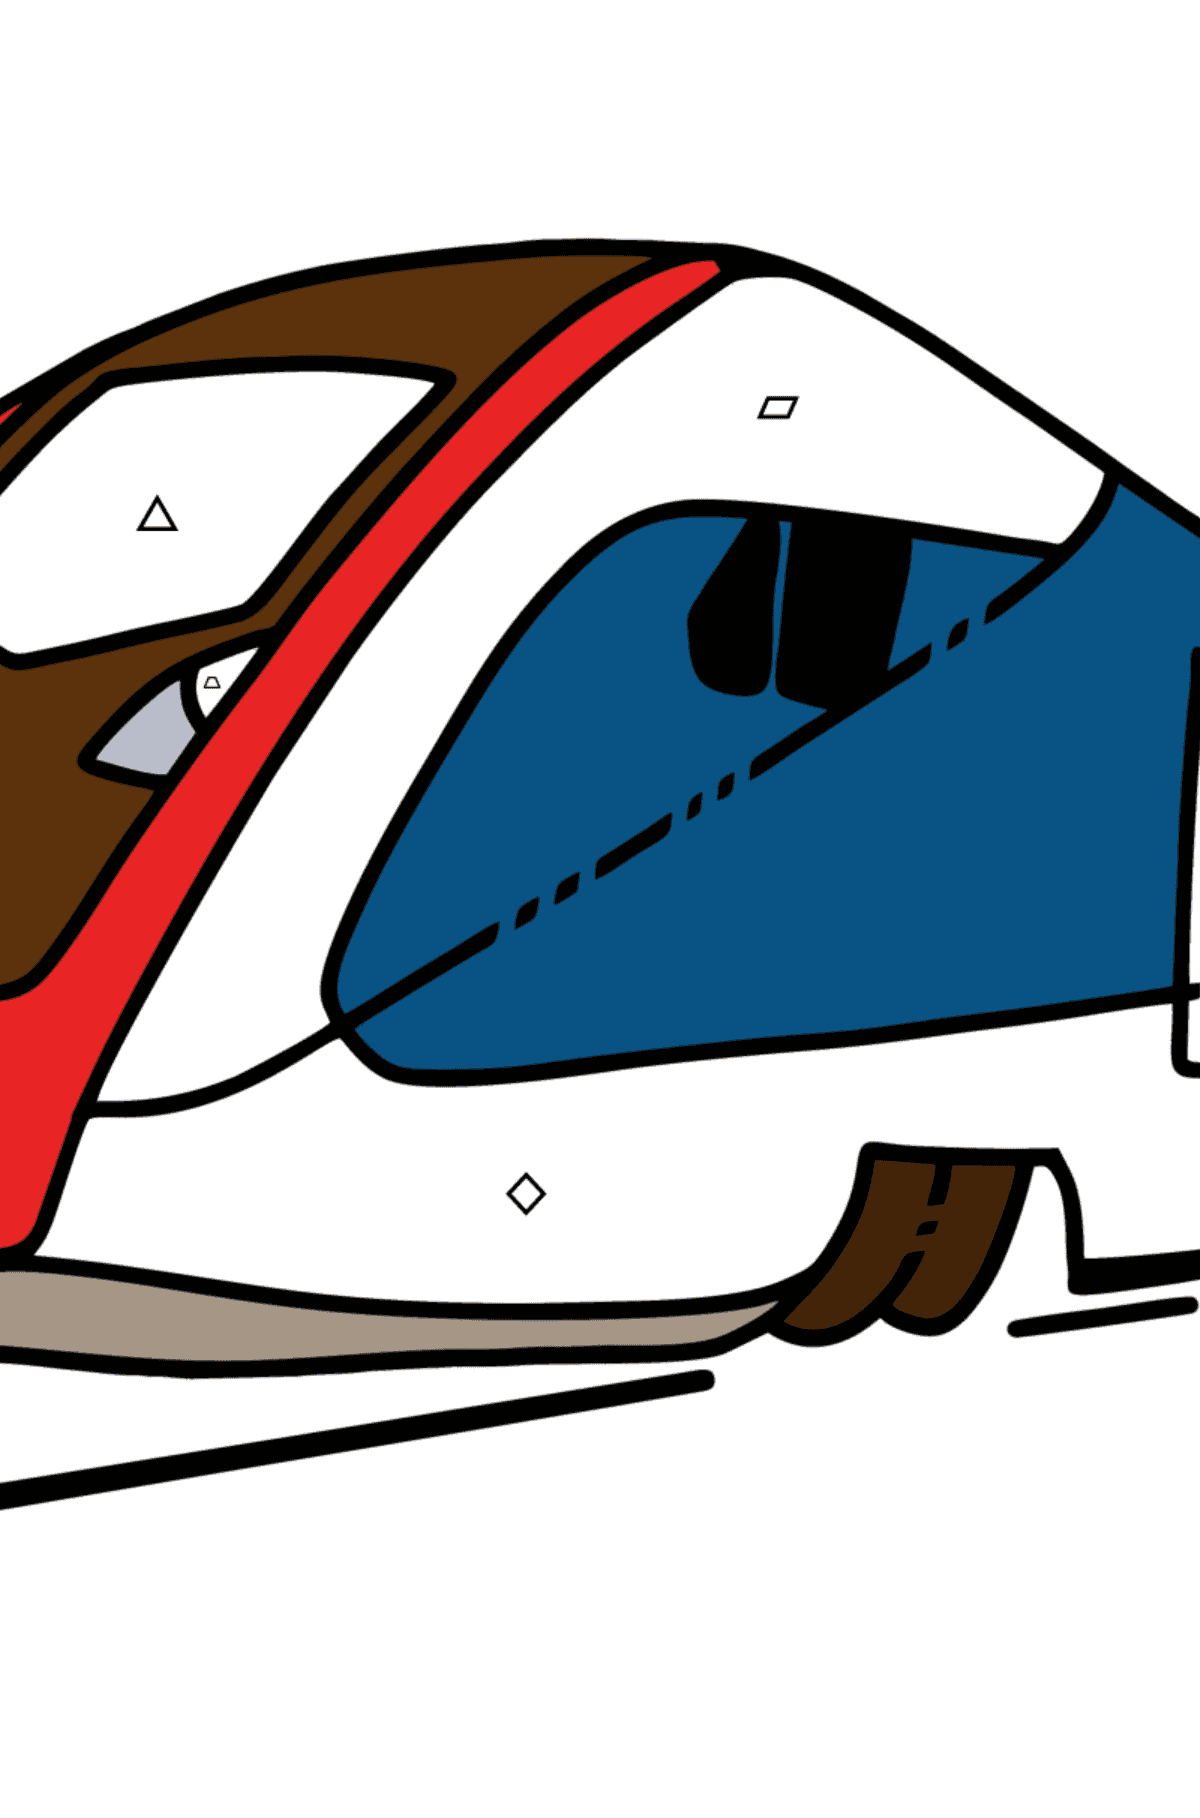 Раскраска поезд для малышей - Картинка высокого качества для Детей